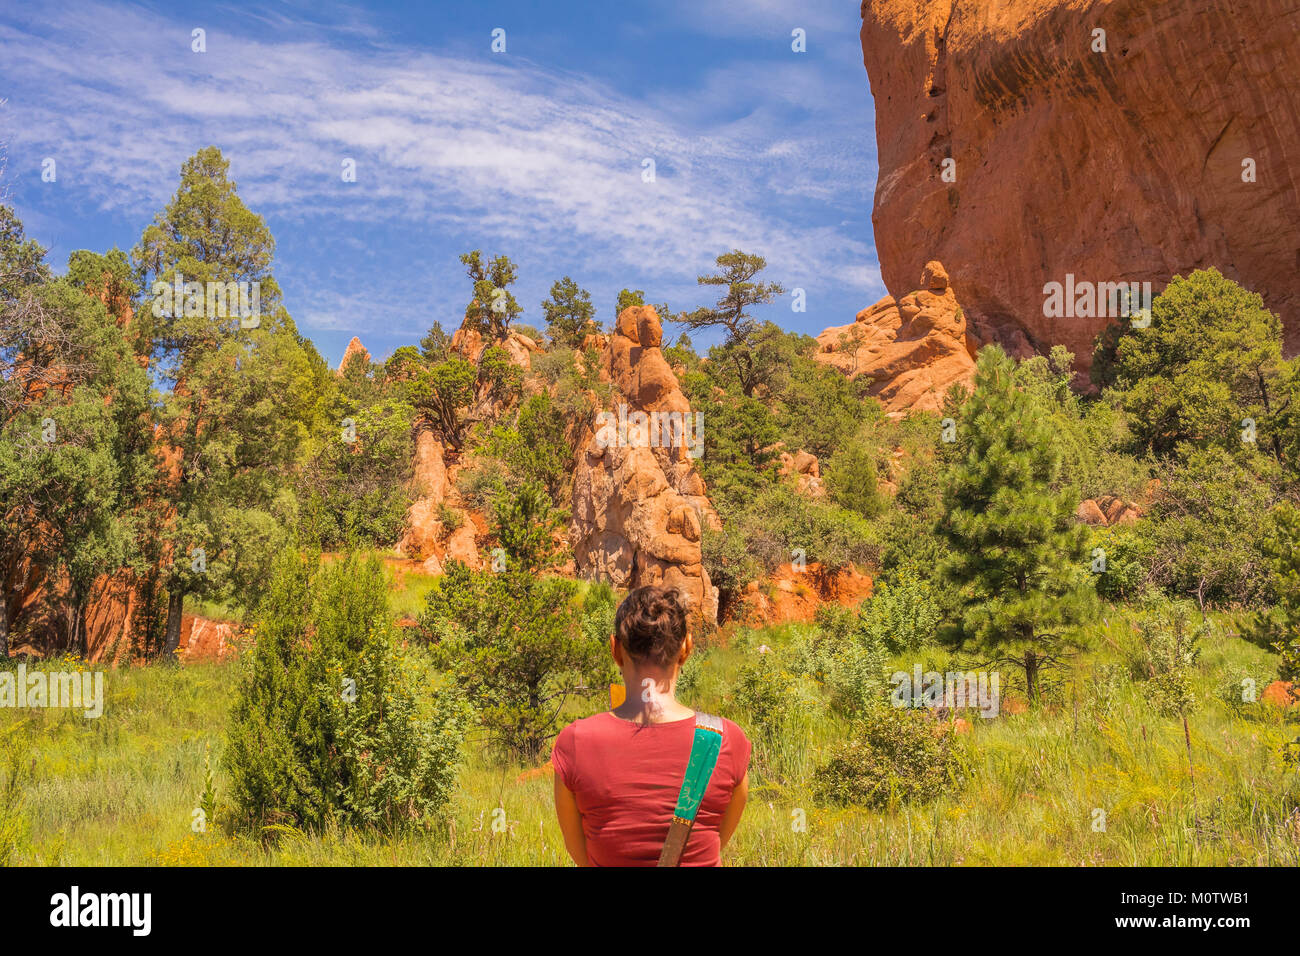 Woman taking photos in the Garden of the Gods park, Colorado Springs, Colorado, USA Stock Photo